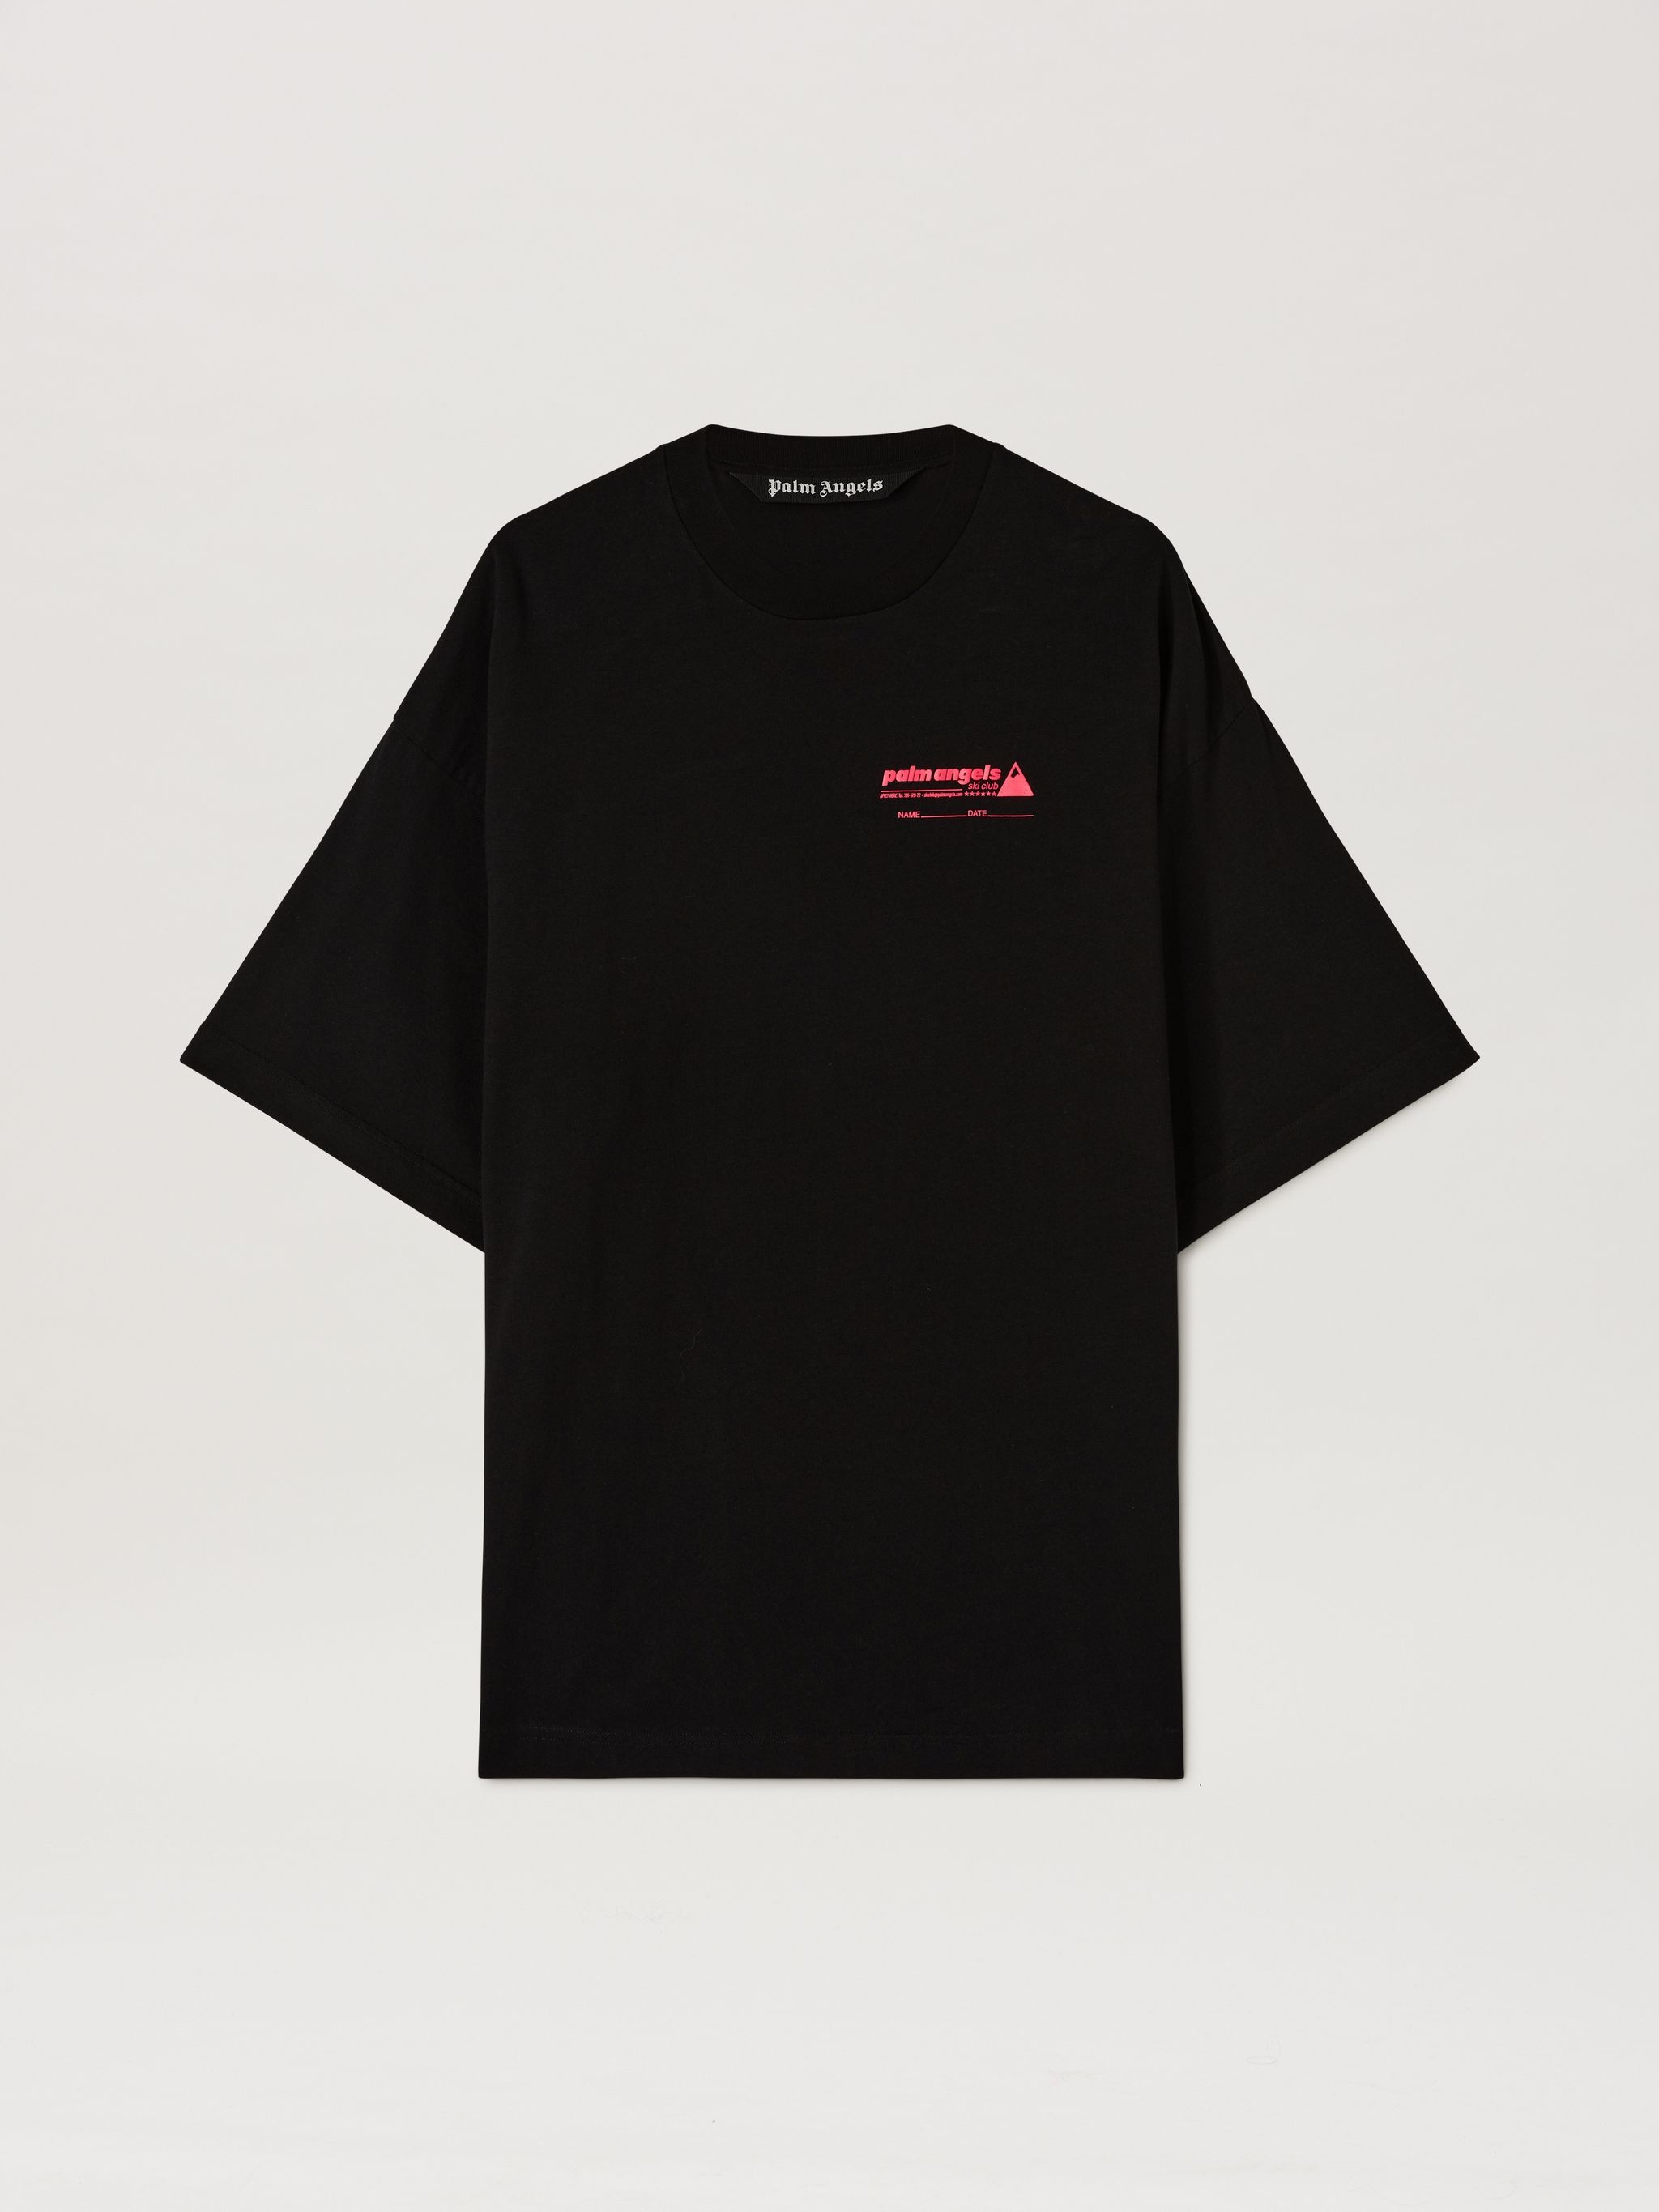 Palm Angels Ski Club T-Shirt Black